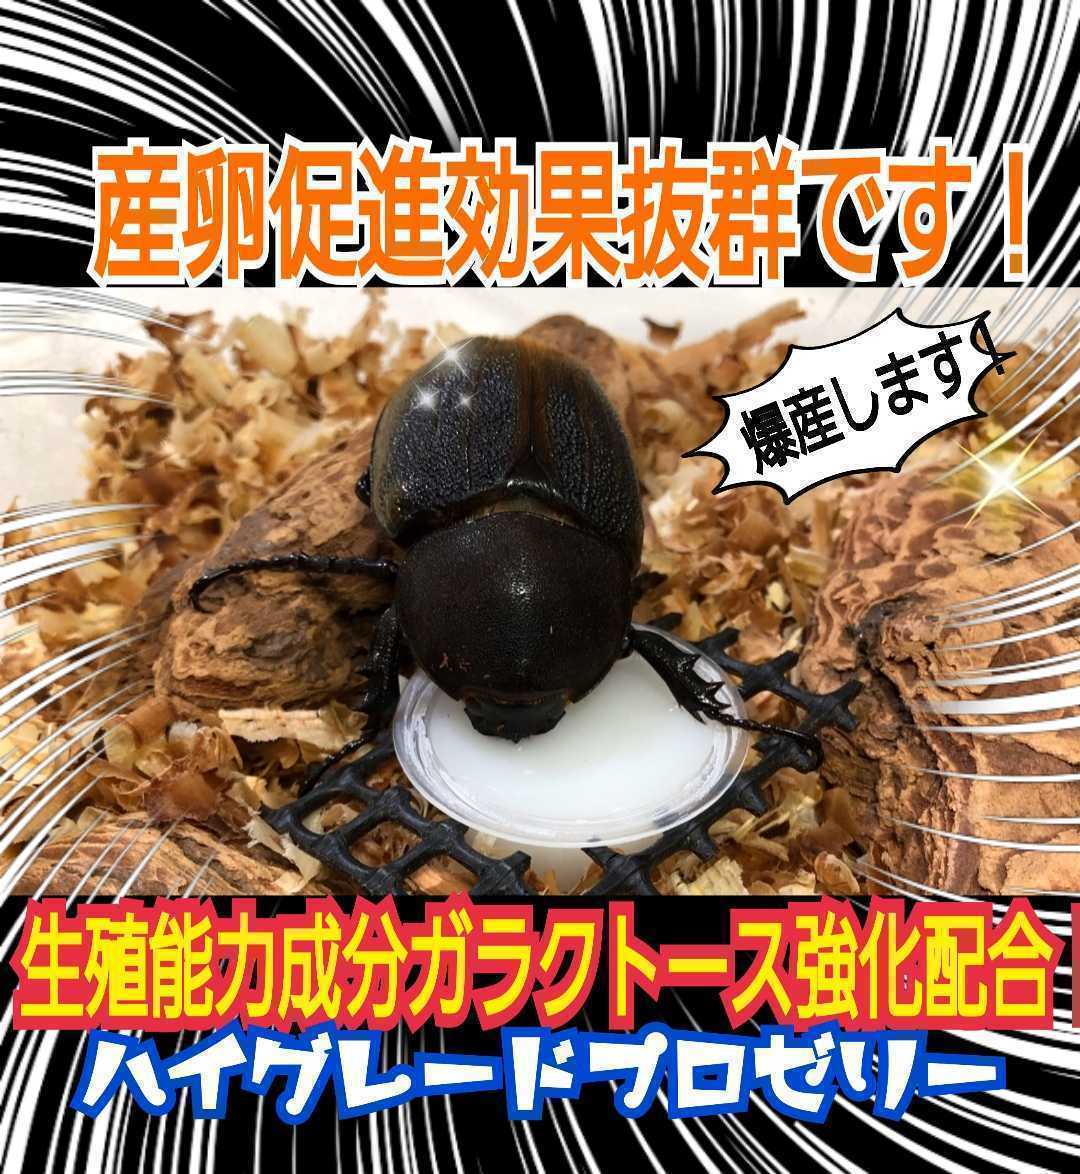 昆虫ゼリー 7個 カブトムシ クワガタムシ - 虫類用品